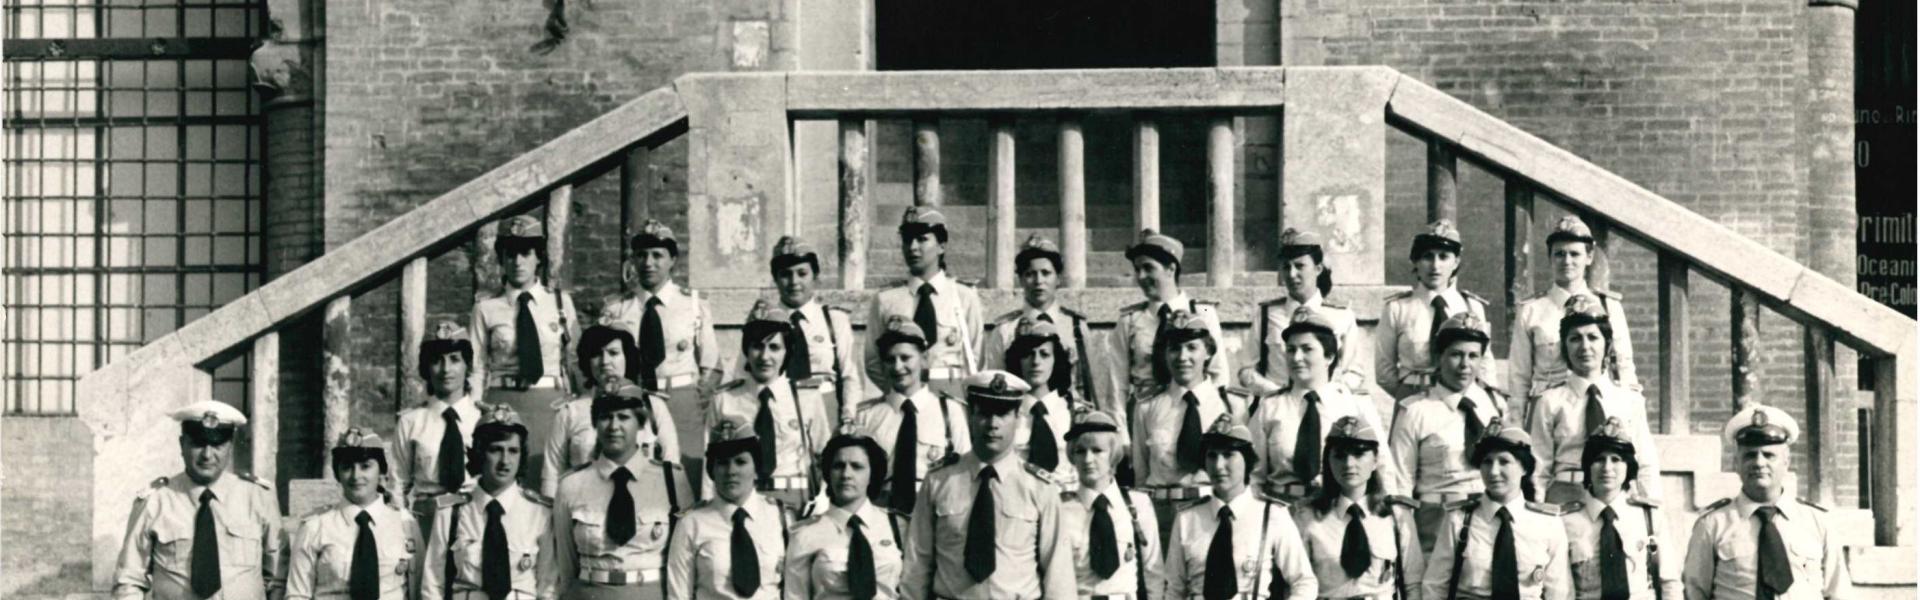 Agosto 1973. Immagine di gruppo delle Vigilesse in servizio nel Corpo dei Vigili Urbani del Comune di Rimini in posa davanti alla scalinata del Palazzo dell'Arengo